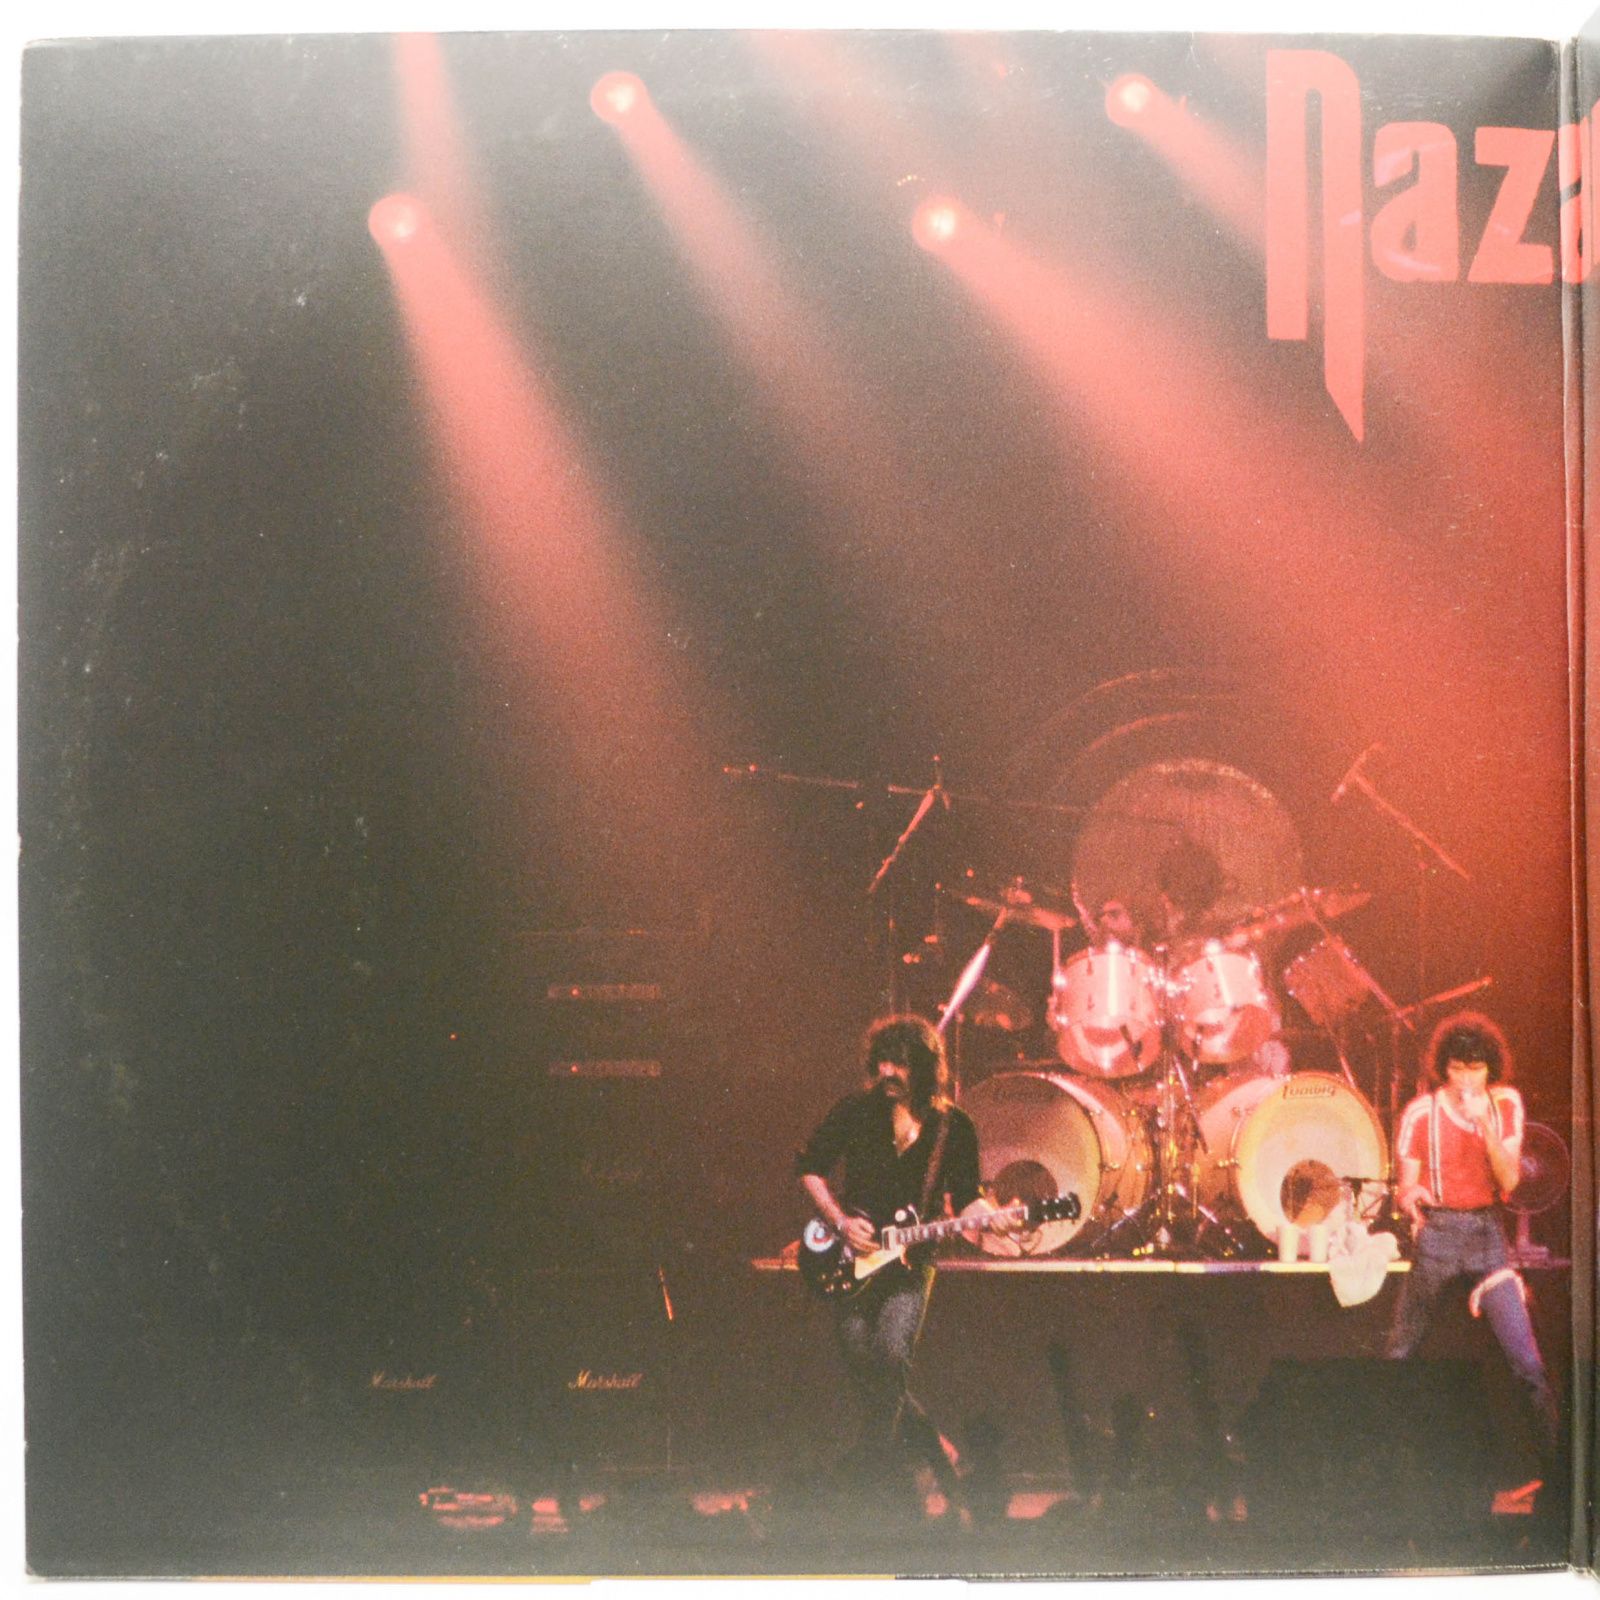 Nazareth — Snaz (2LP), 1981